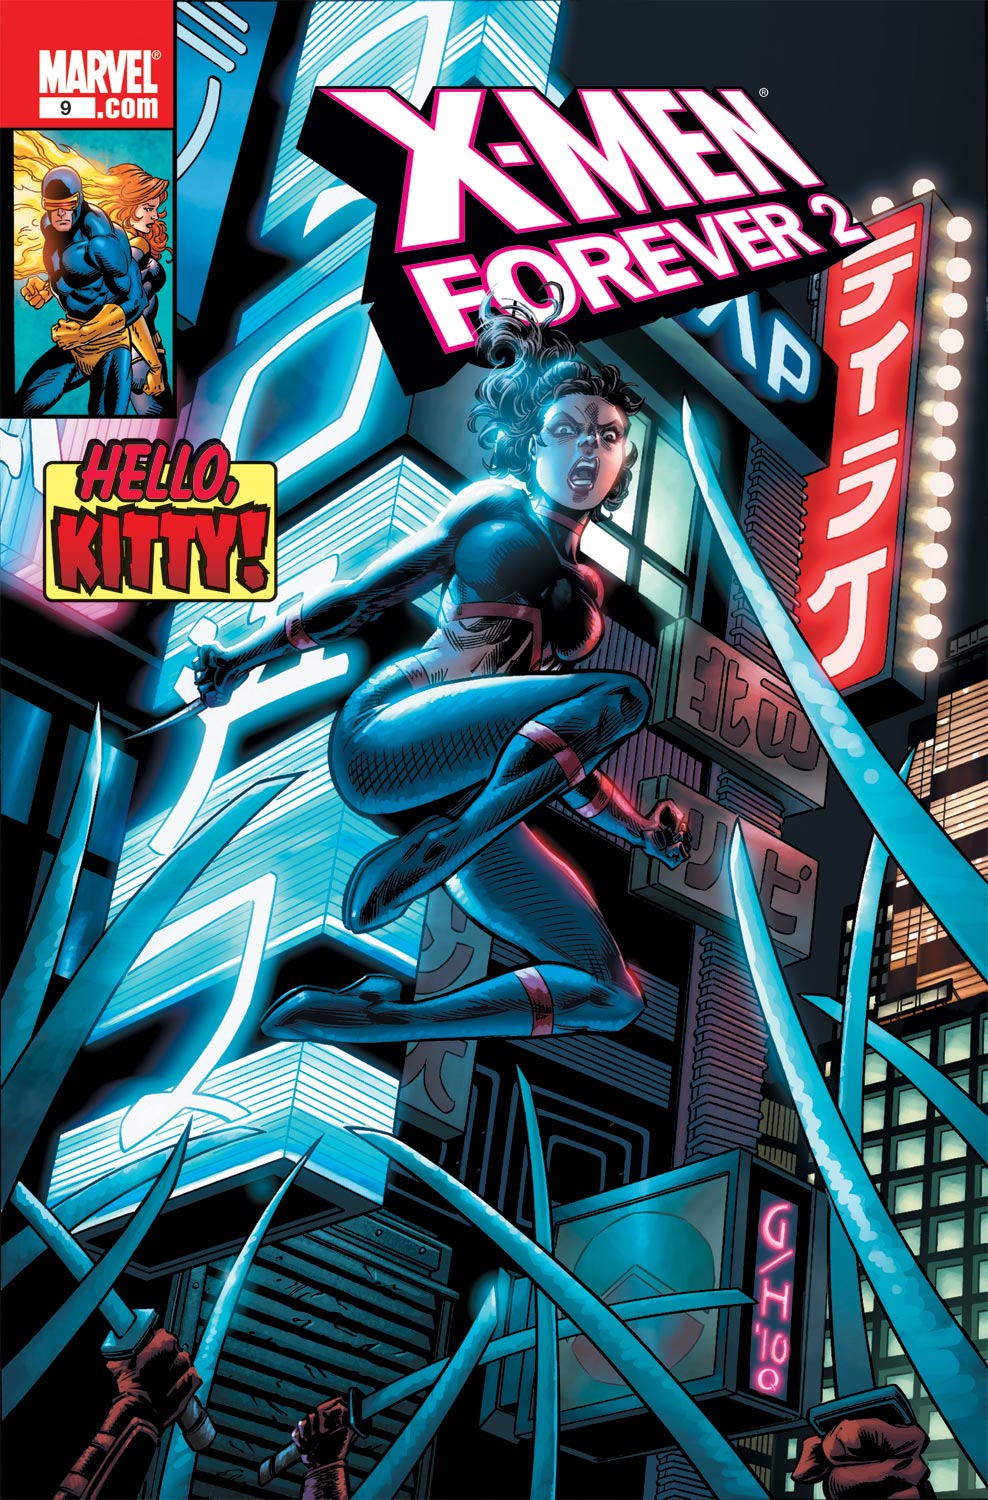 X-Men Forever 2 (2010) #9